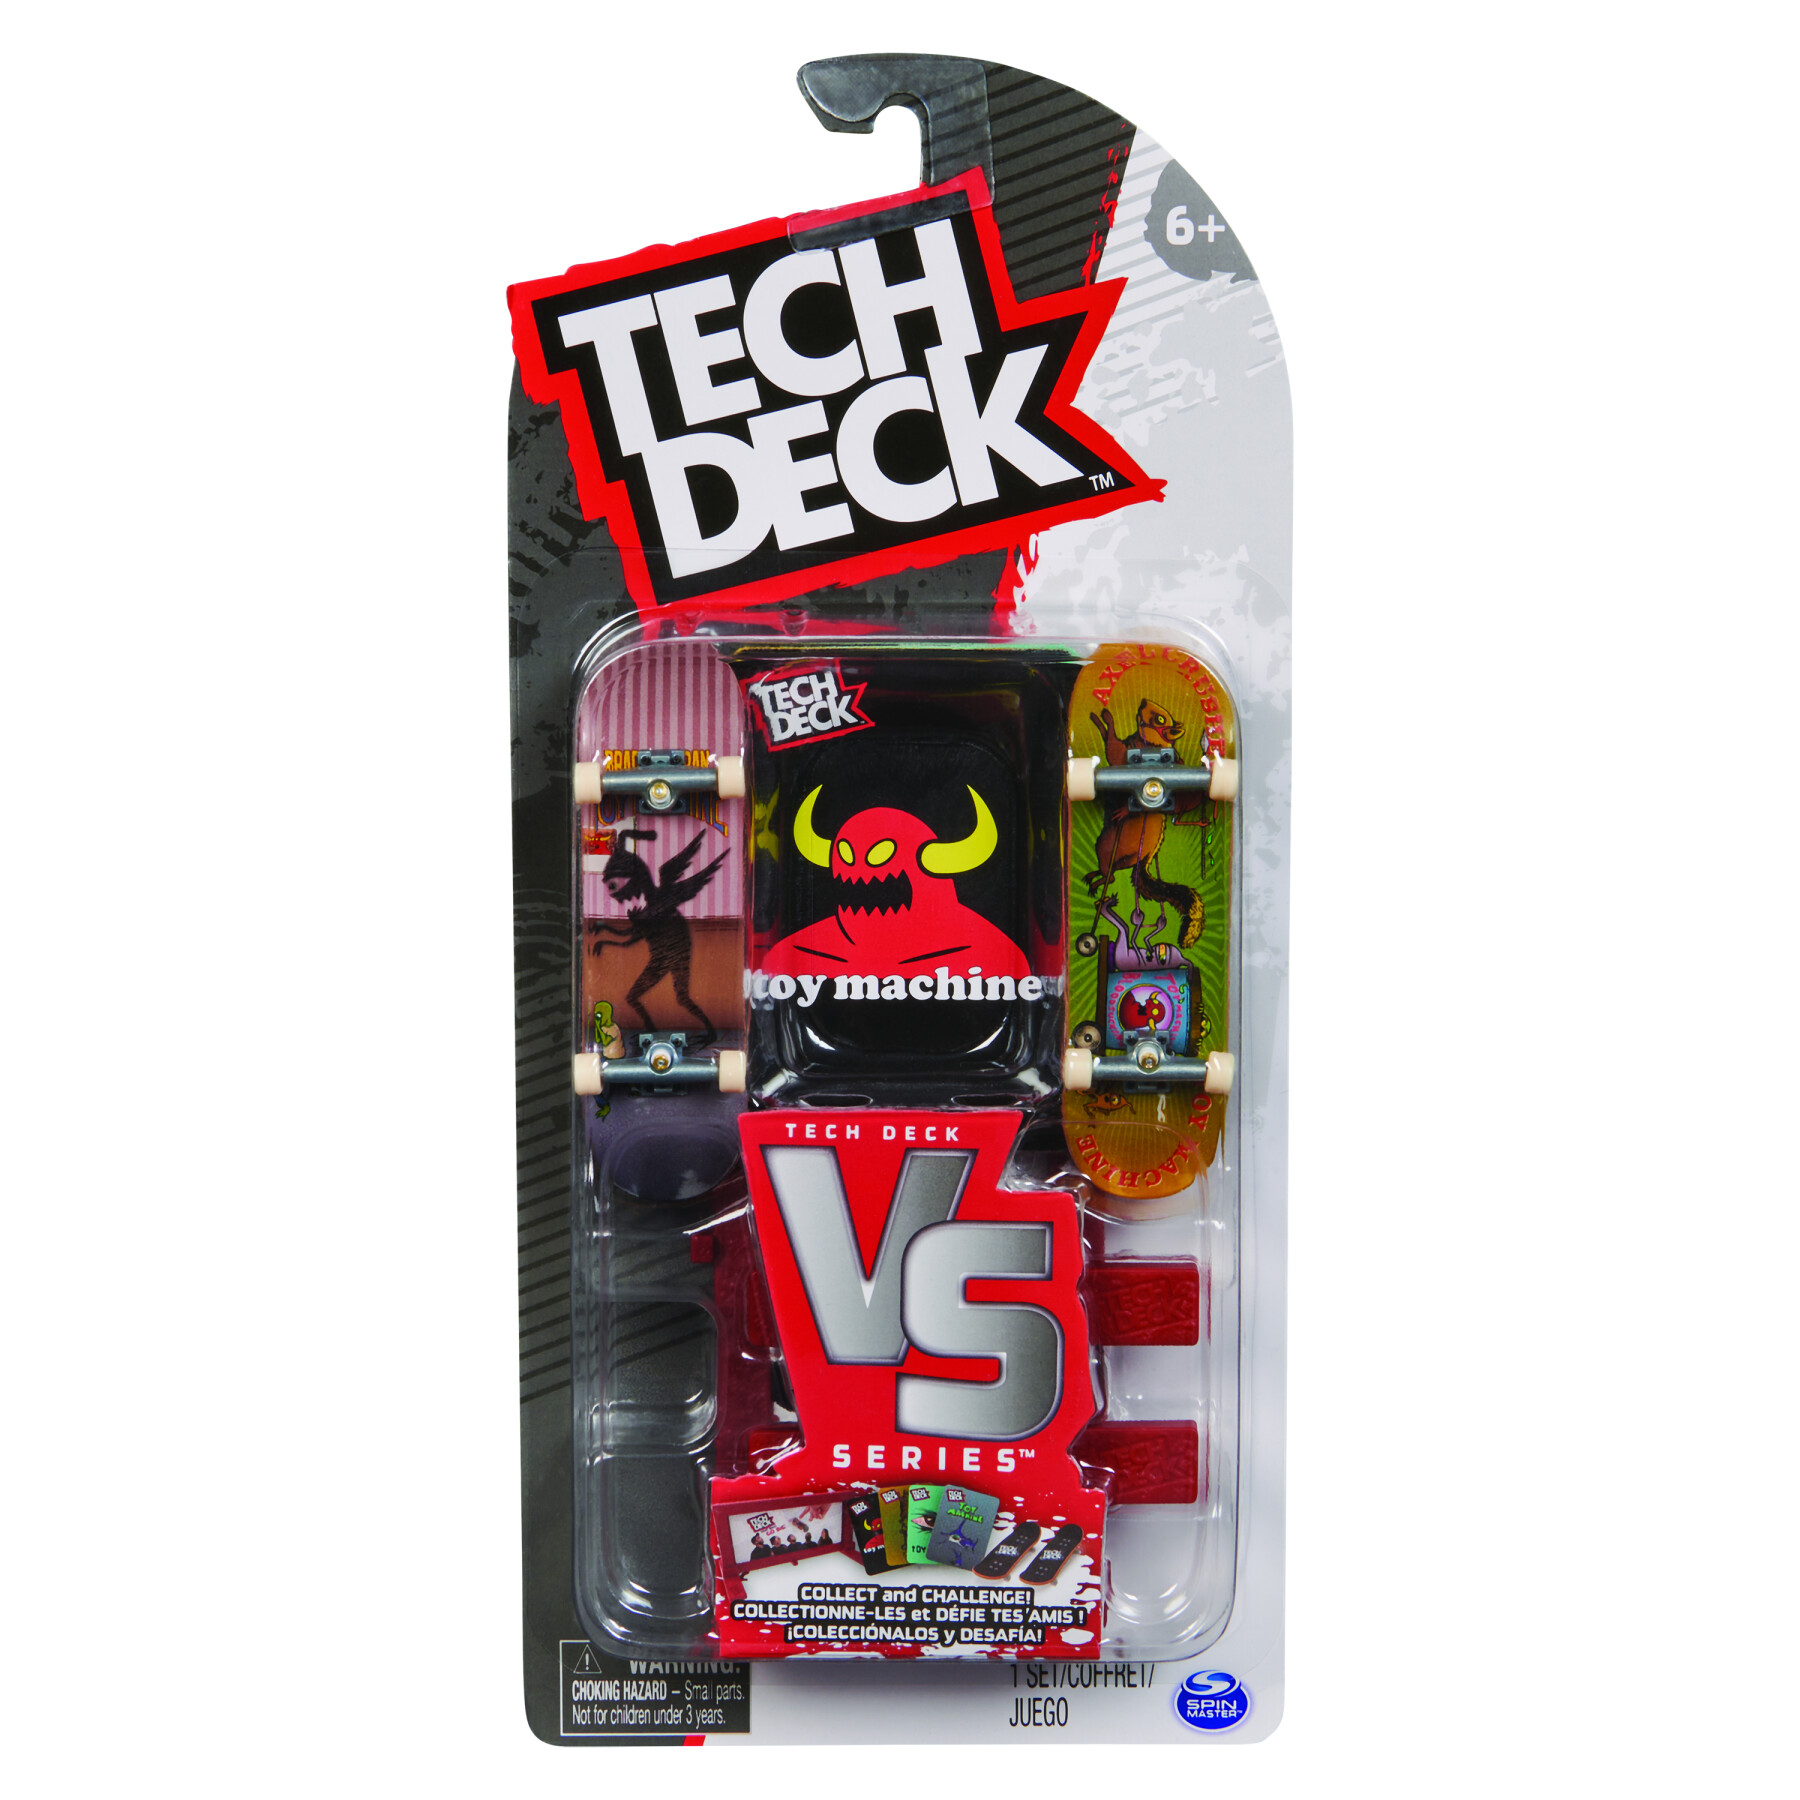 Tech deck versus - 